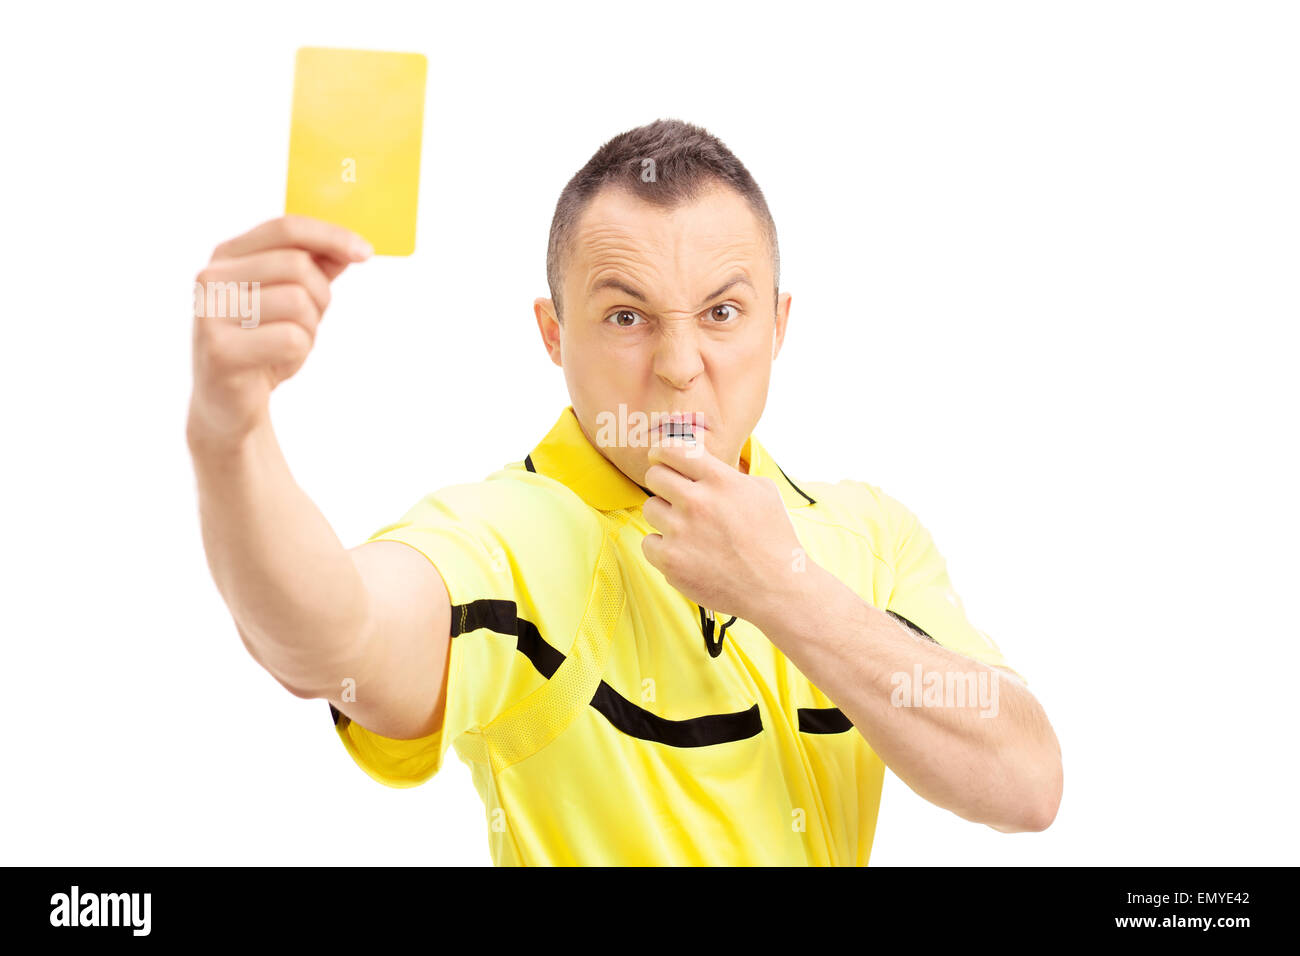 Arbitre de football furieux montrant une carte jaune et en soufflant un sifflet isolé sur fond blanc Banque D'Images